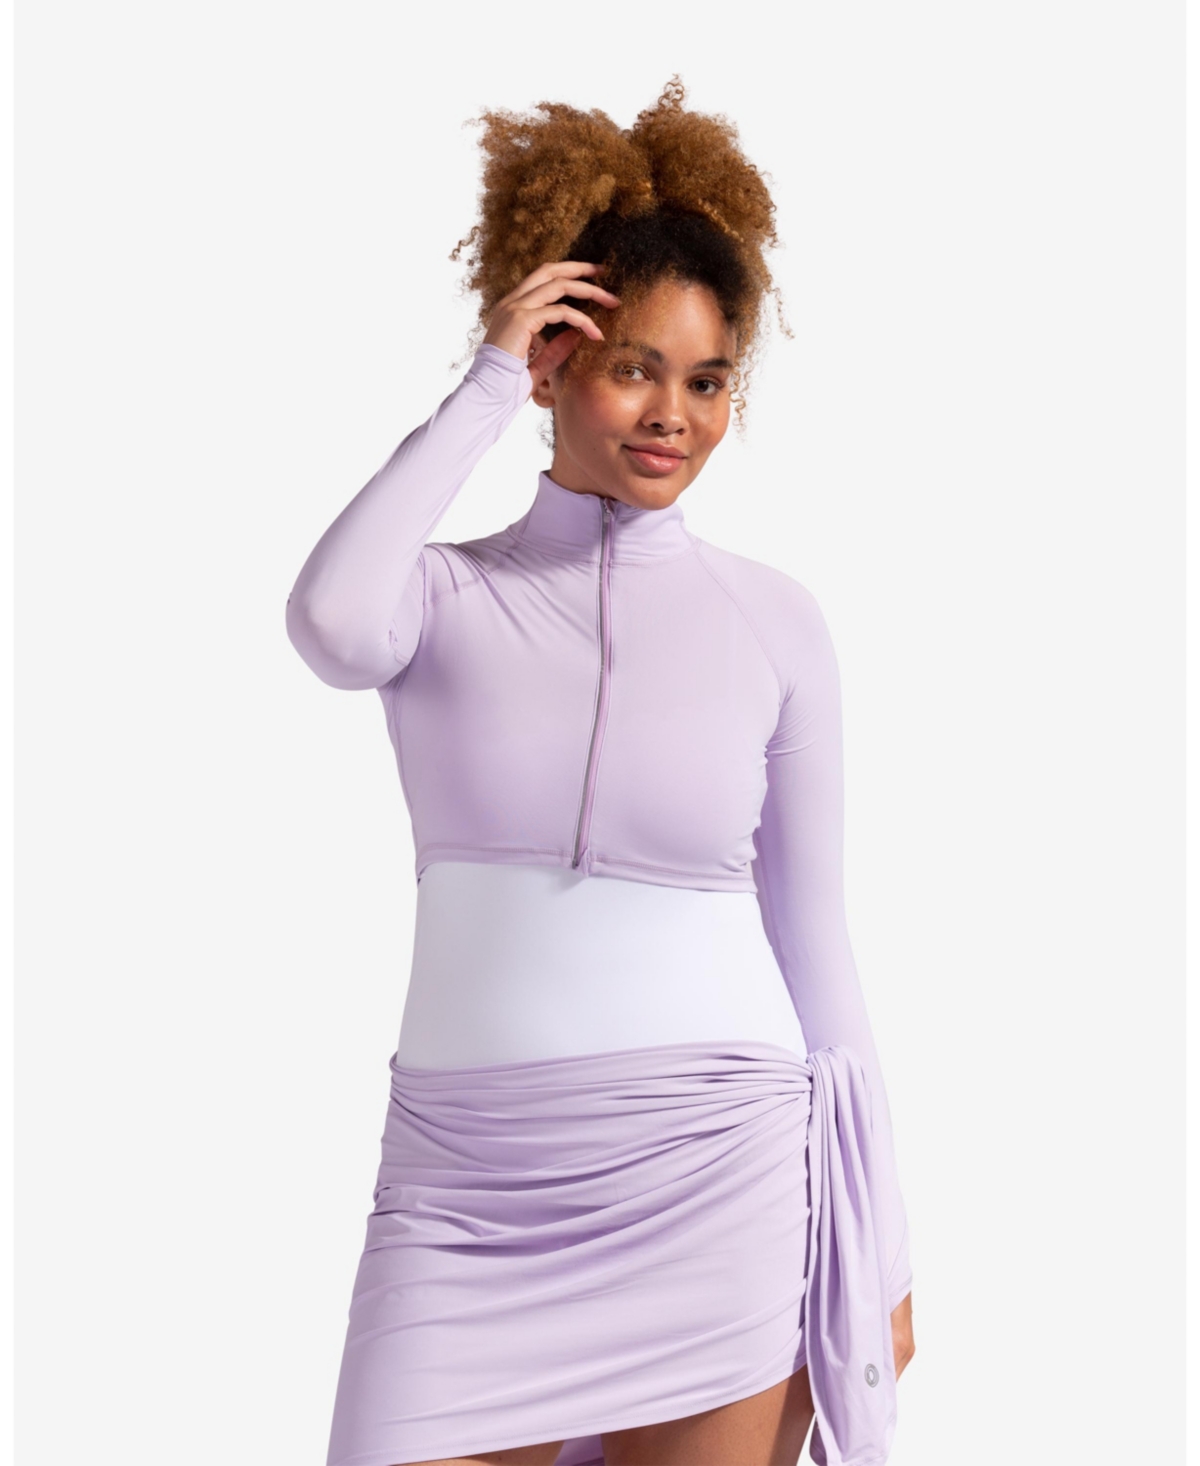 Women's Upf 50+ Sun Protective Full Zip Crop Top - Lavender